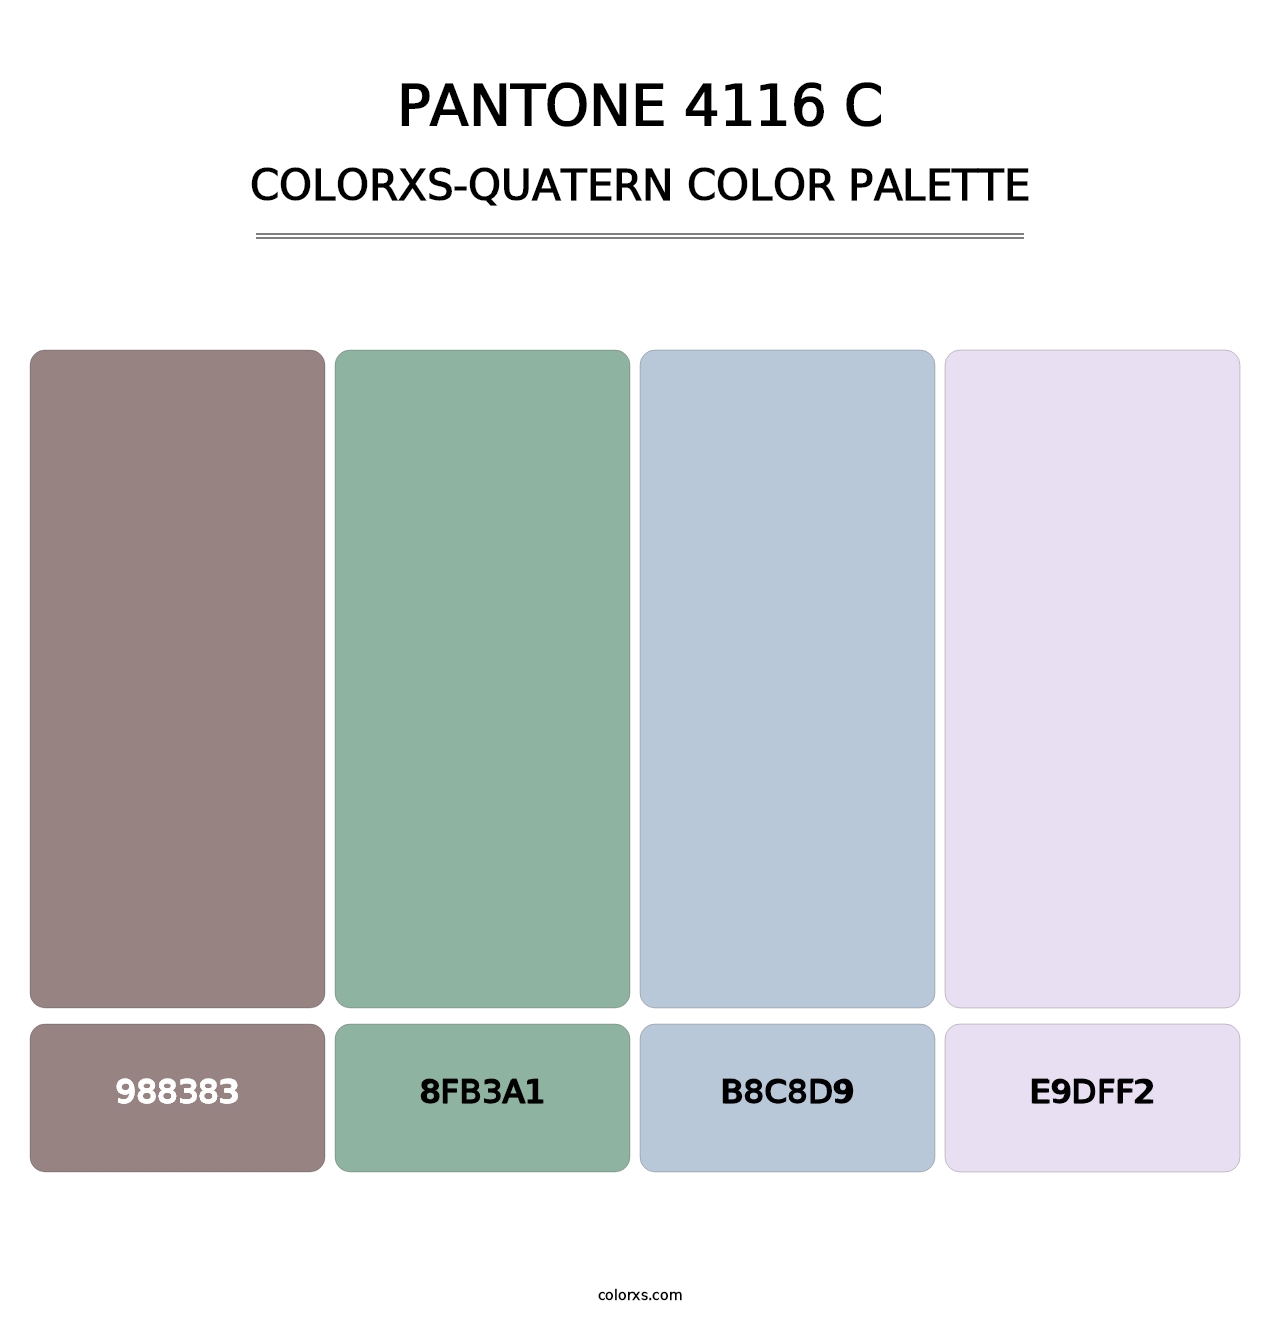 PANTONE 4116 C - Colorxs Quatern Palette